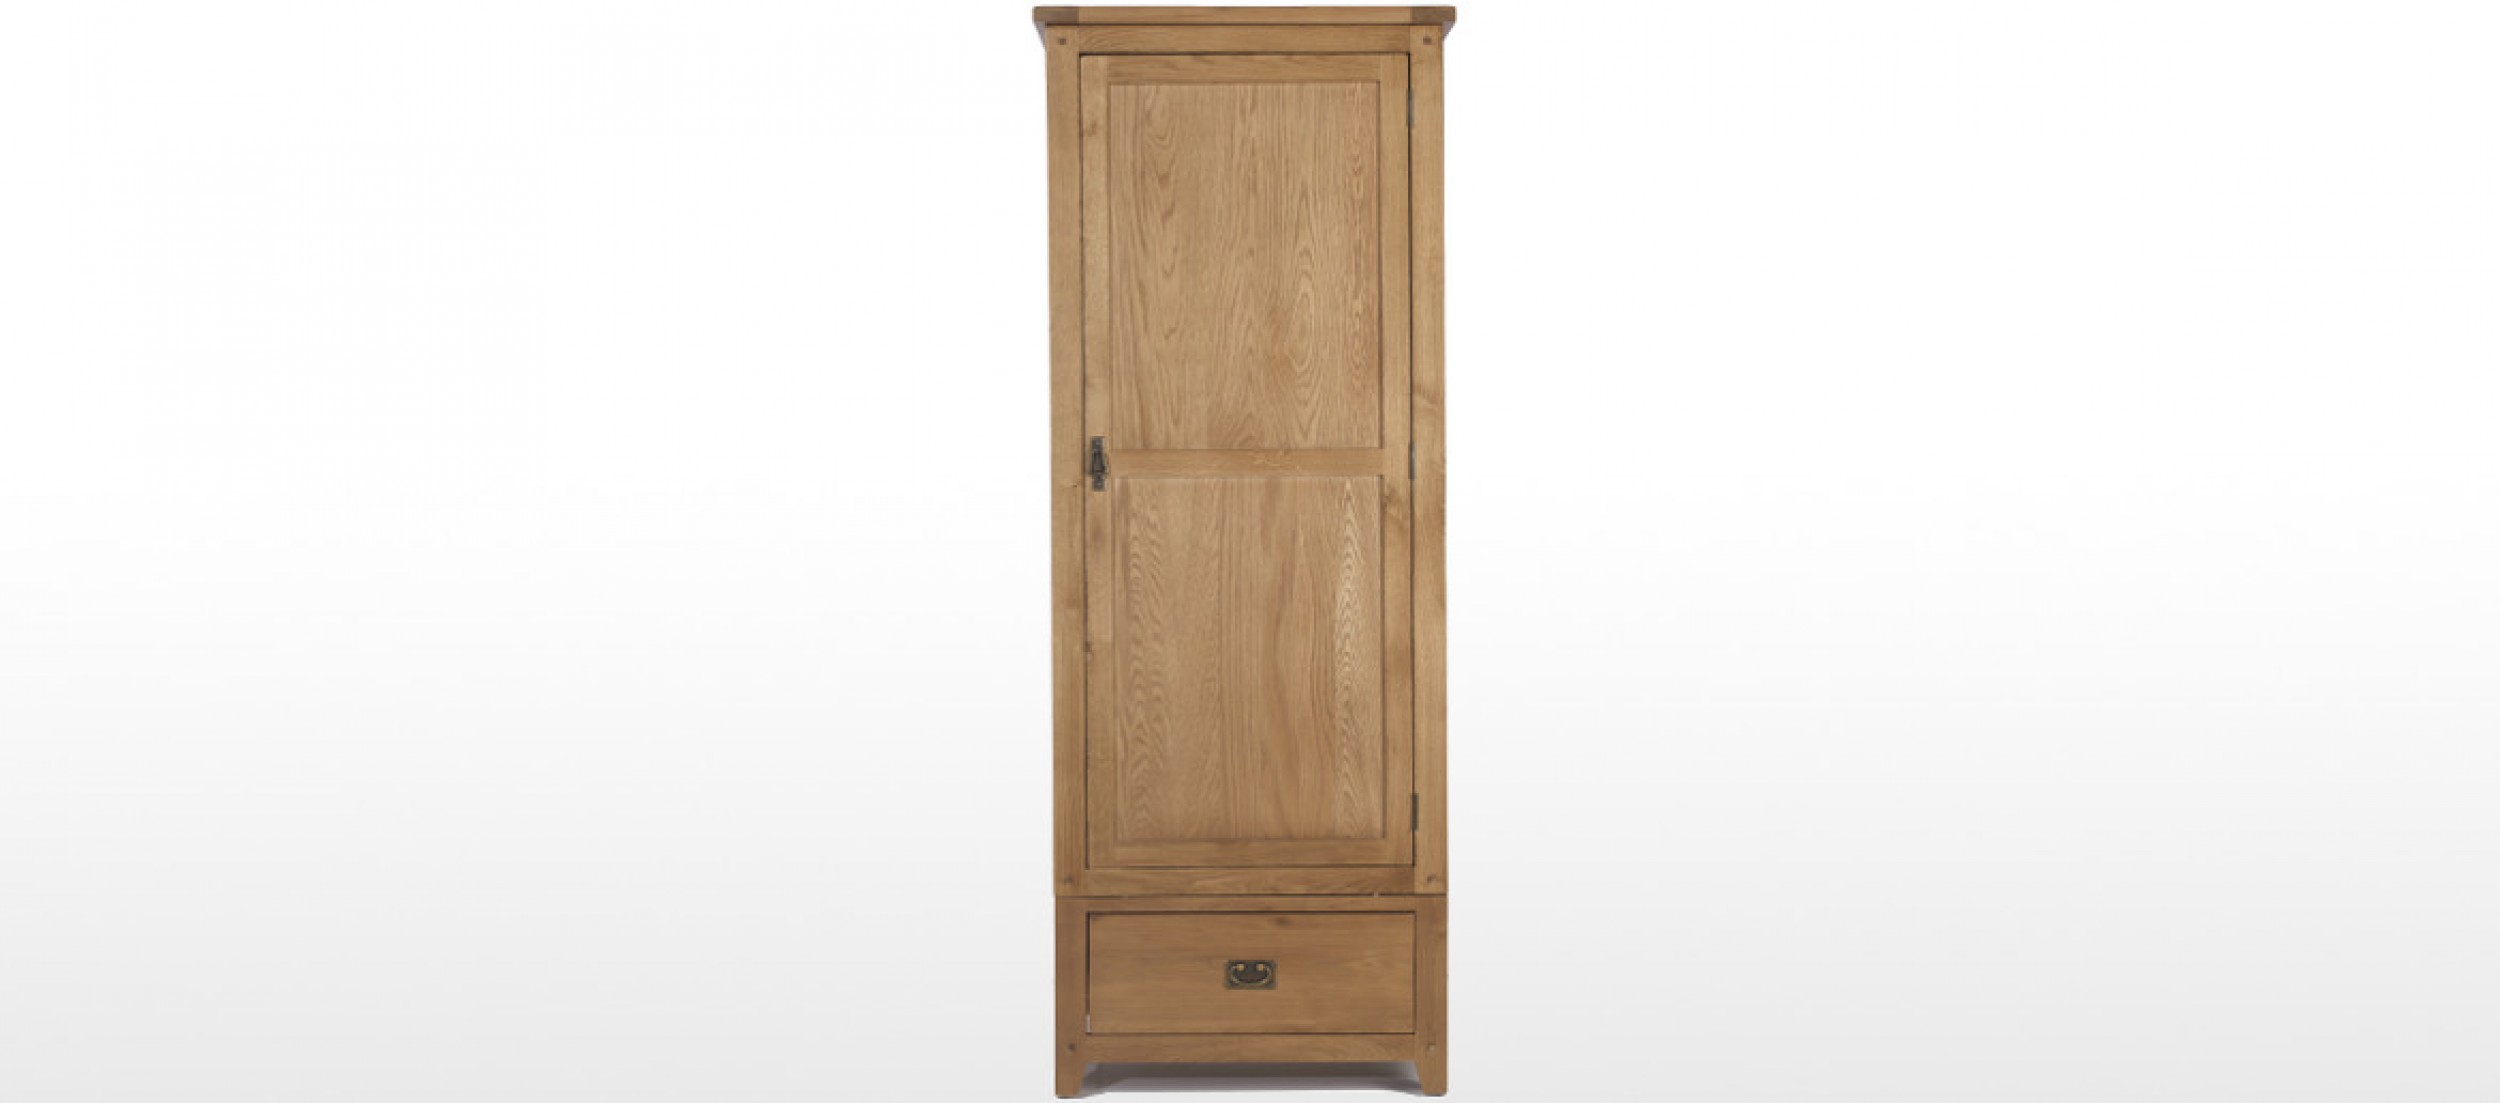 Single rustic oak wardrobe